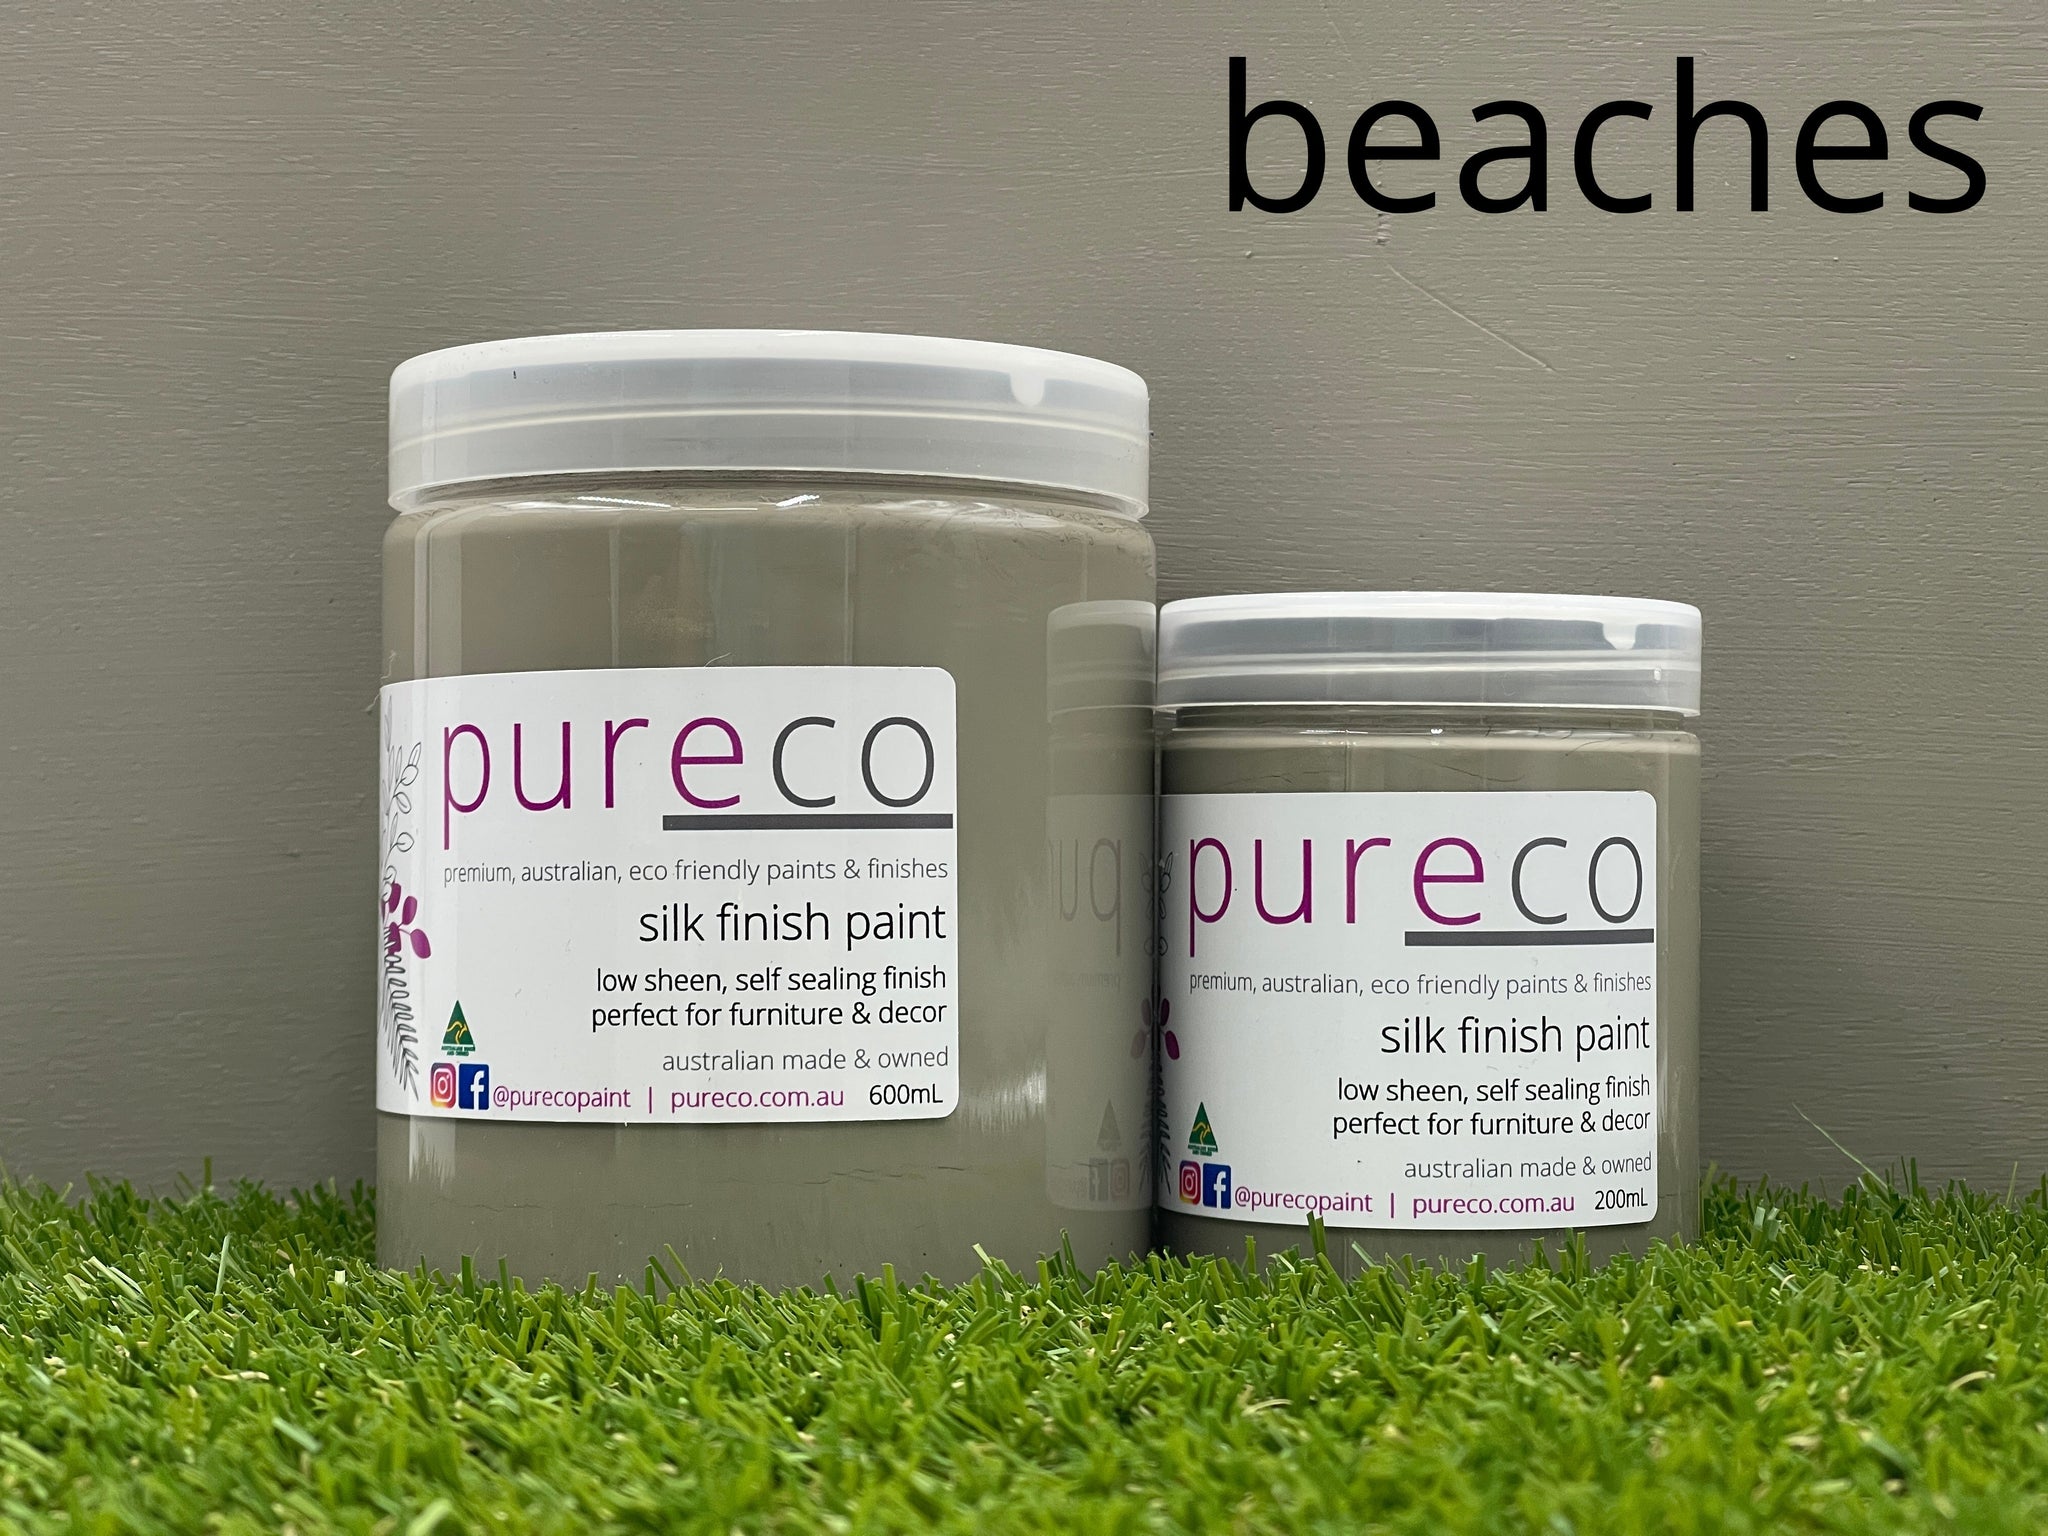 Pureco Silk Finish - Beaches